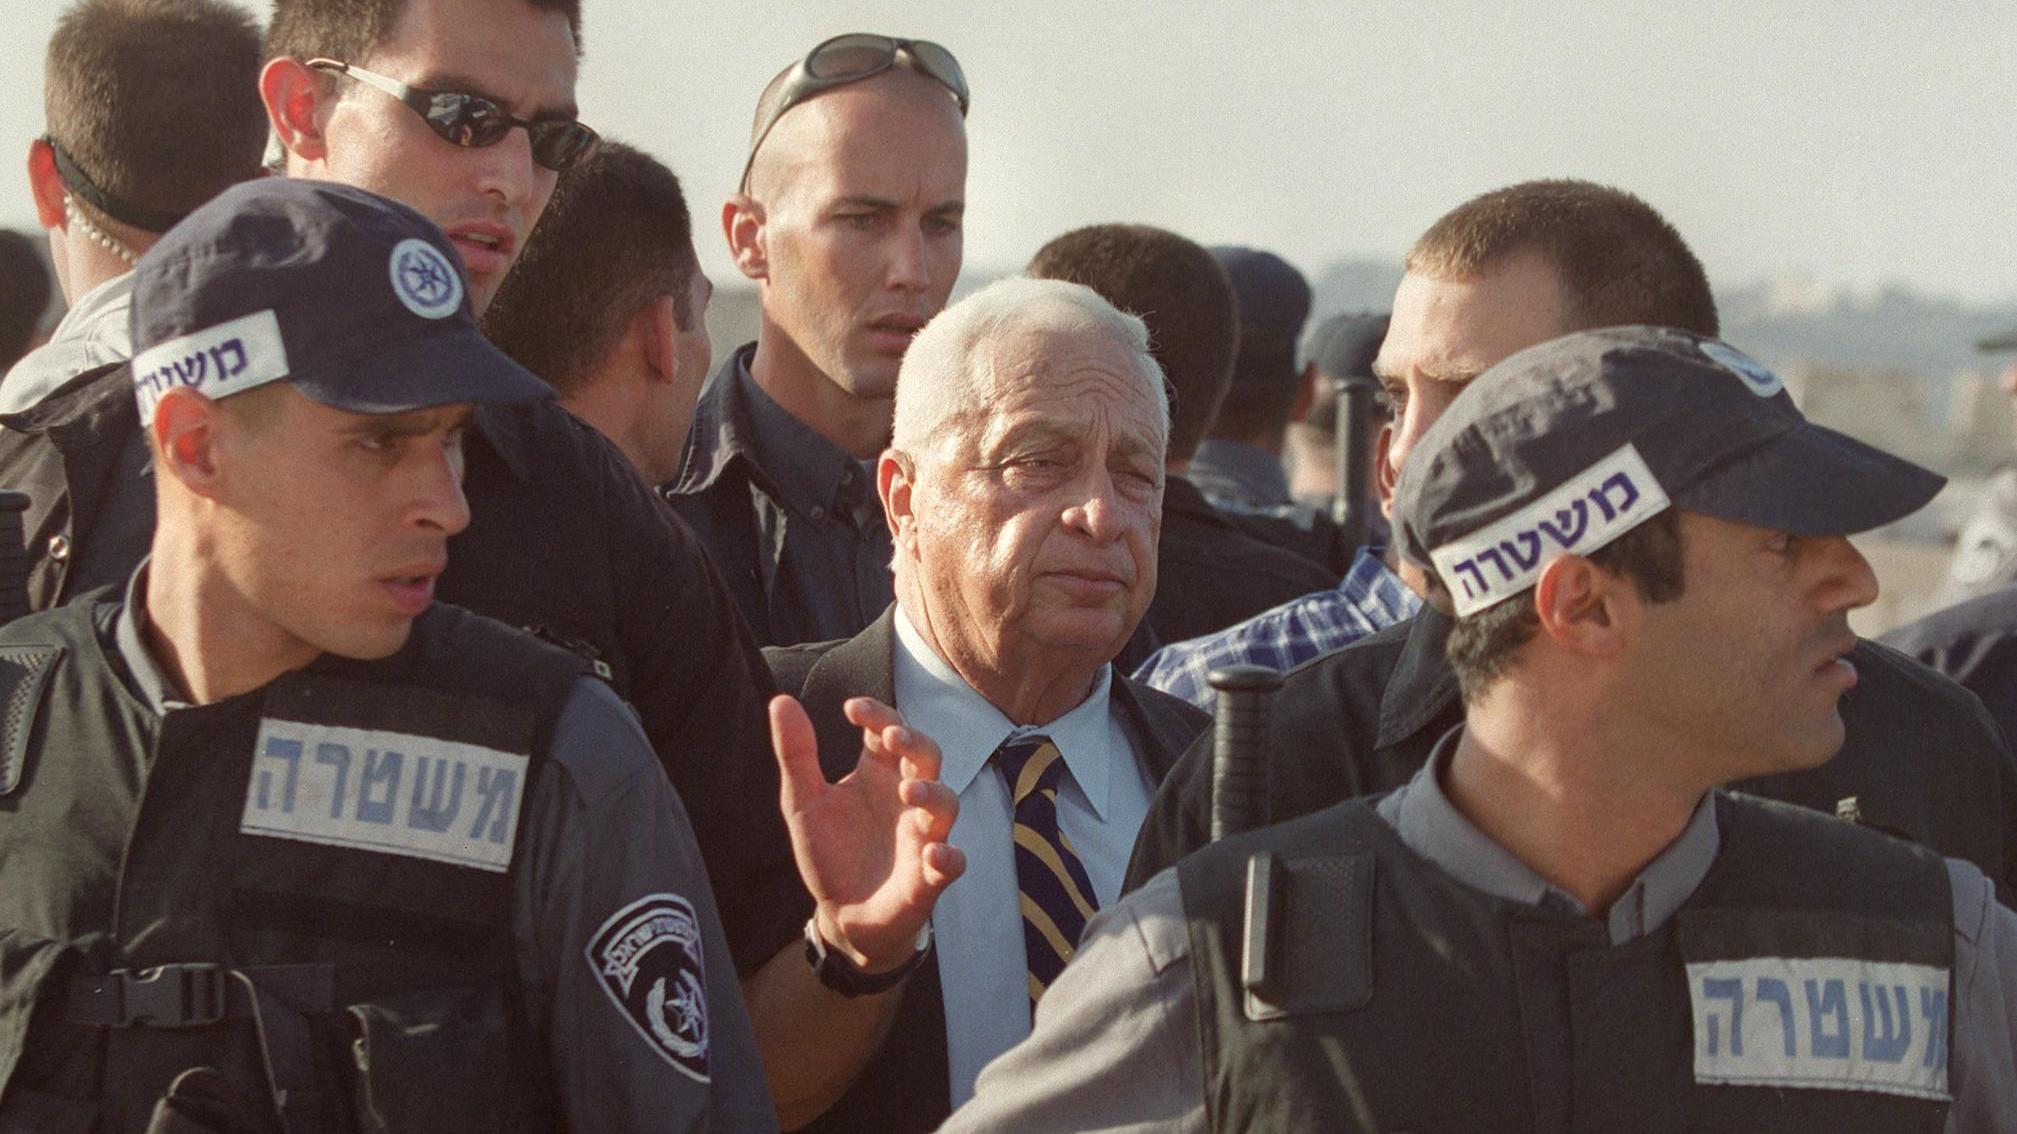 Di den Israeli Prime Minister Sharon wey guards surround am as e dey leave al-Aqsa mosque in 2000